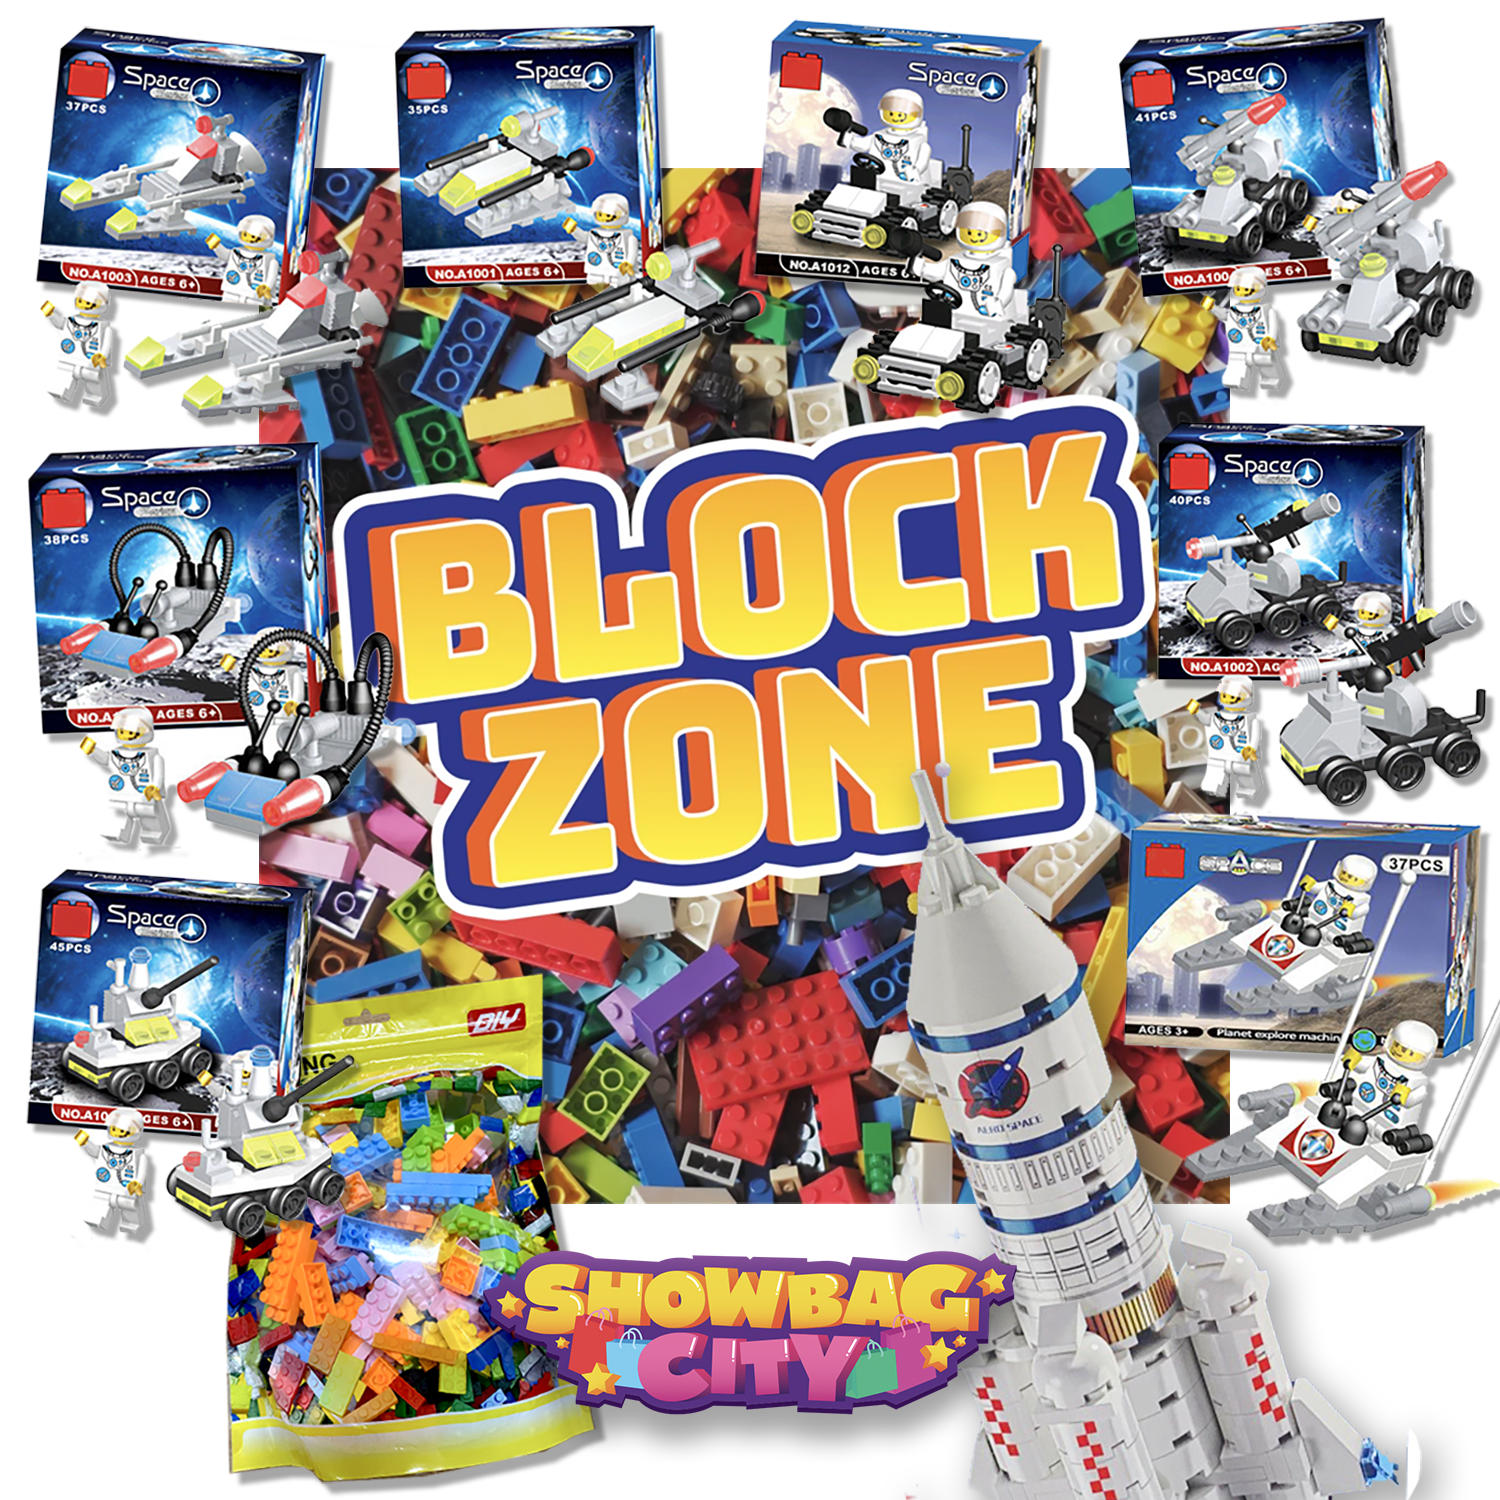 Block Zone 23